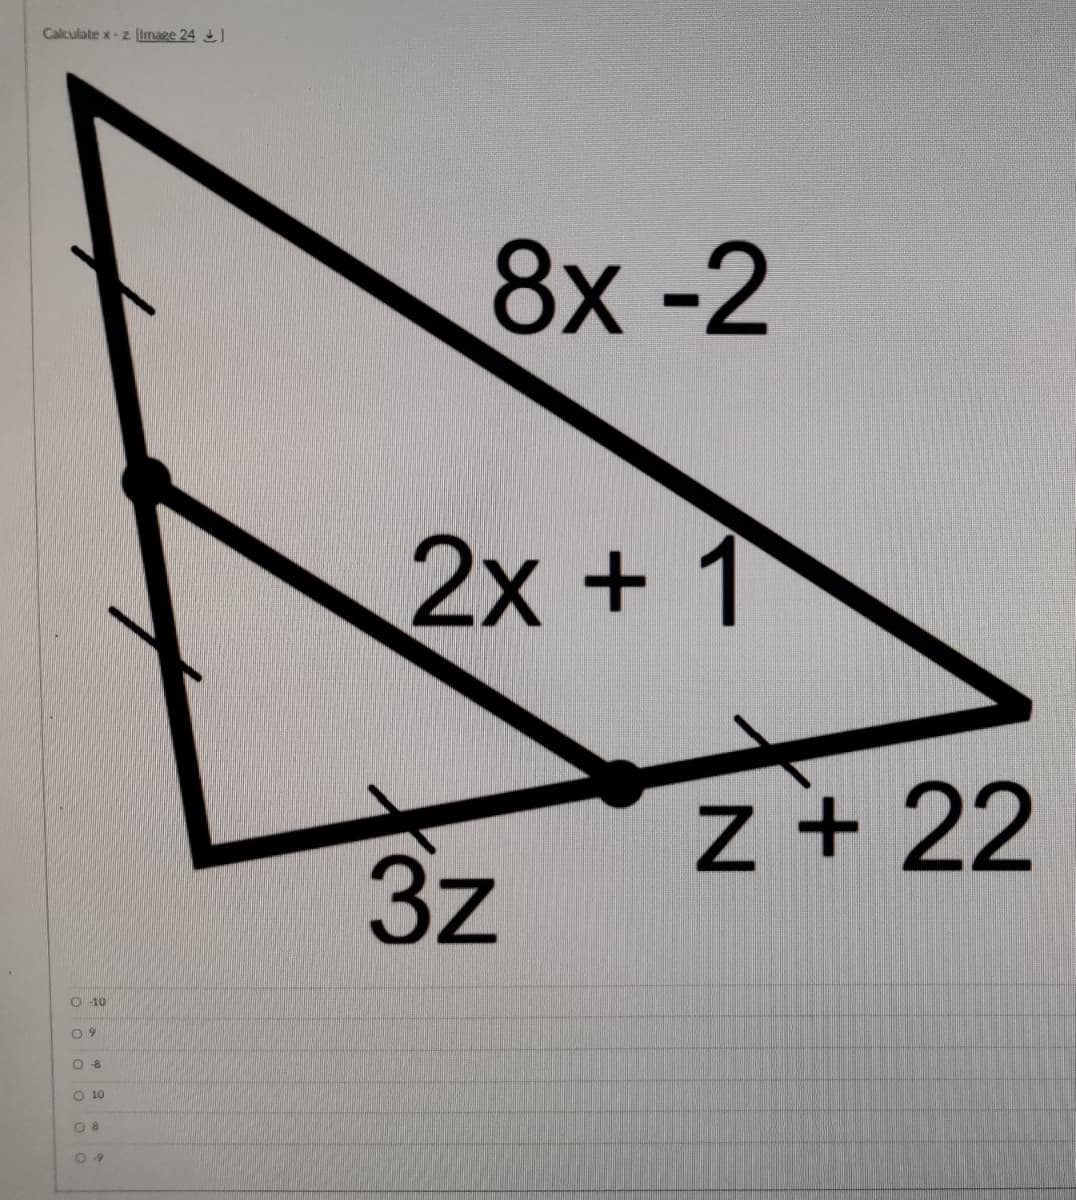 Calculate x-z Image 24 )
8х -2
2x+ 1
z + 22
3z
O -10
O 10
O 8
